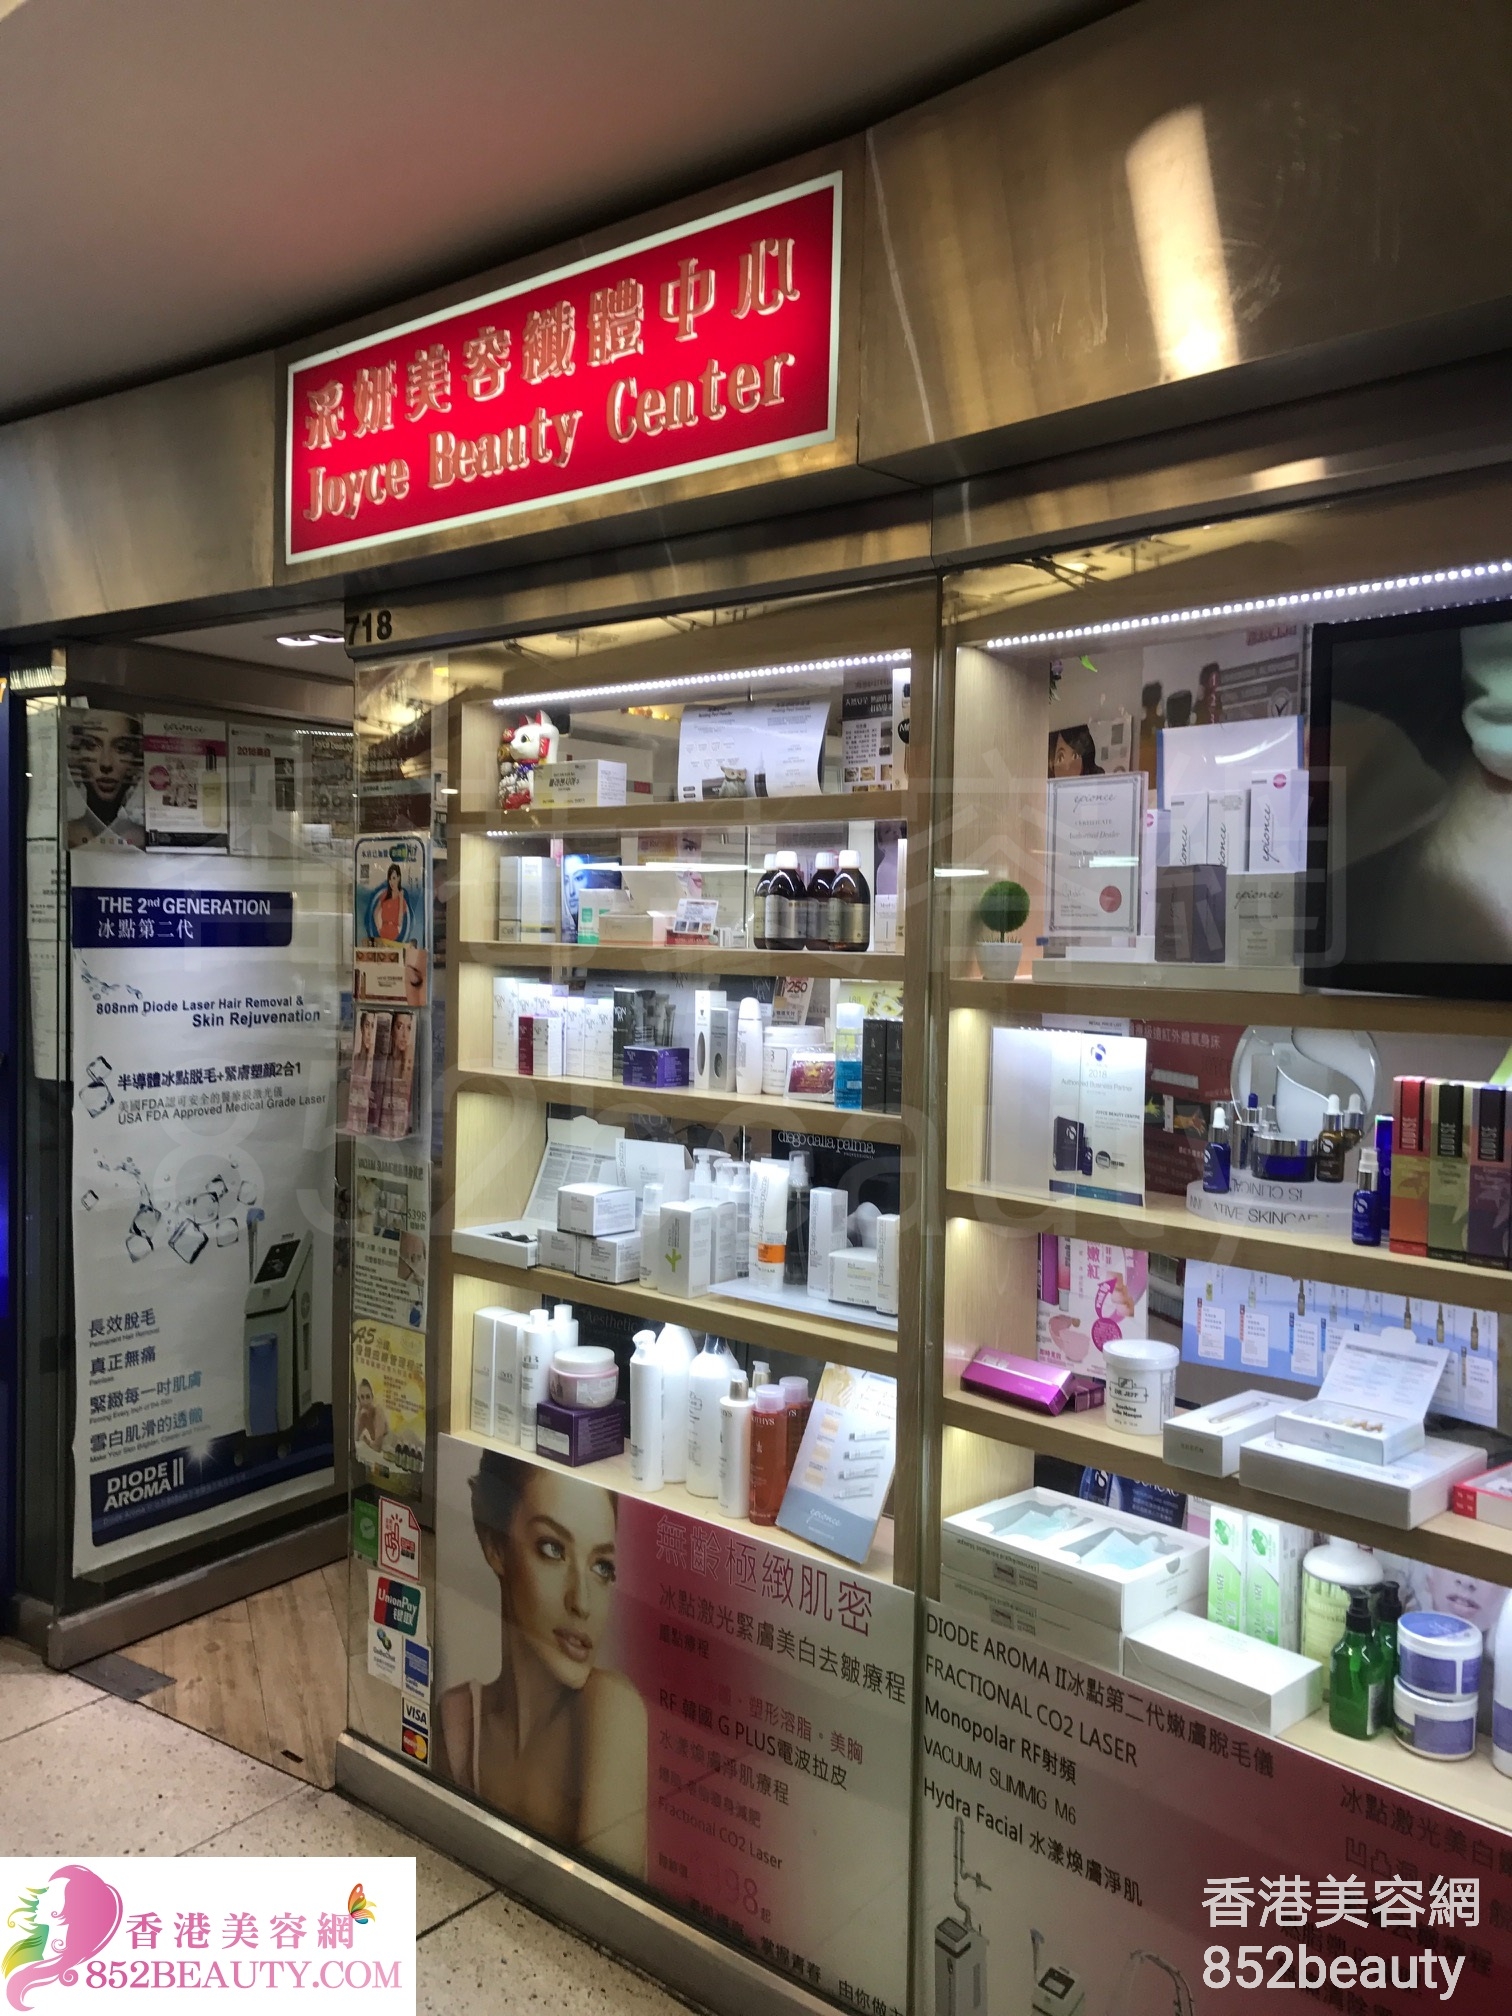 Eye Care: 采妍美容纖體中心 Joyce Beauty Center (西九龍中心)